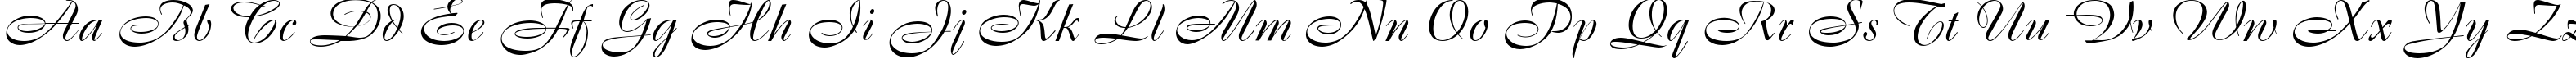 Пример написания английского алфавита шрифтом Cassandra